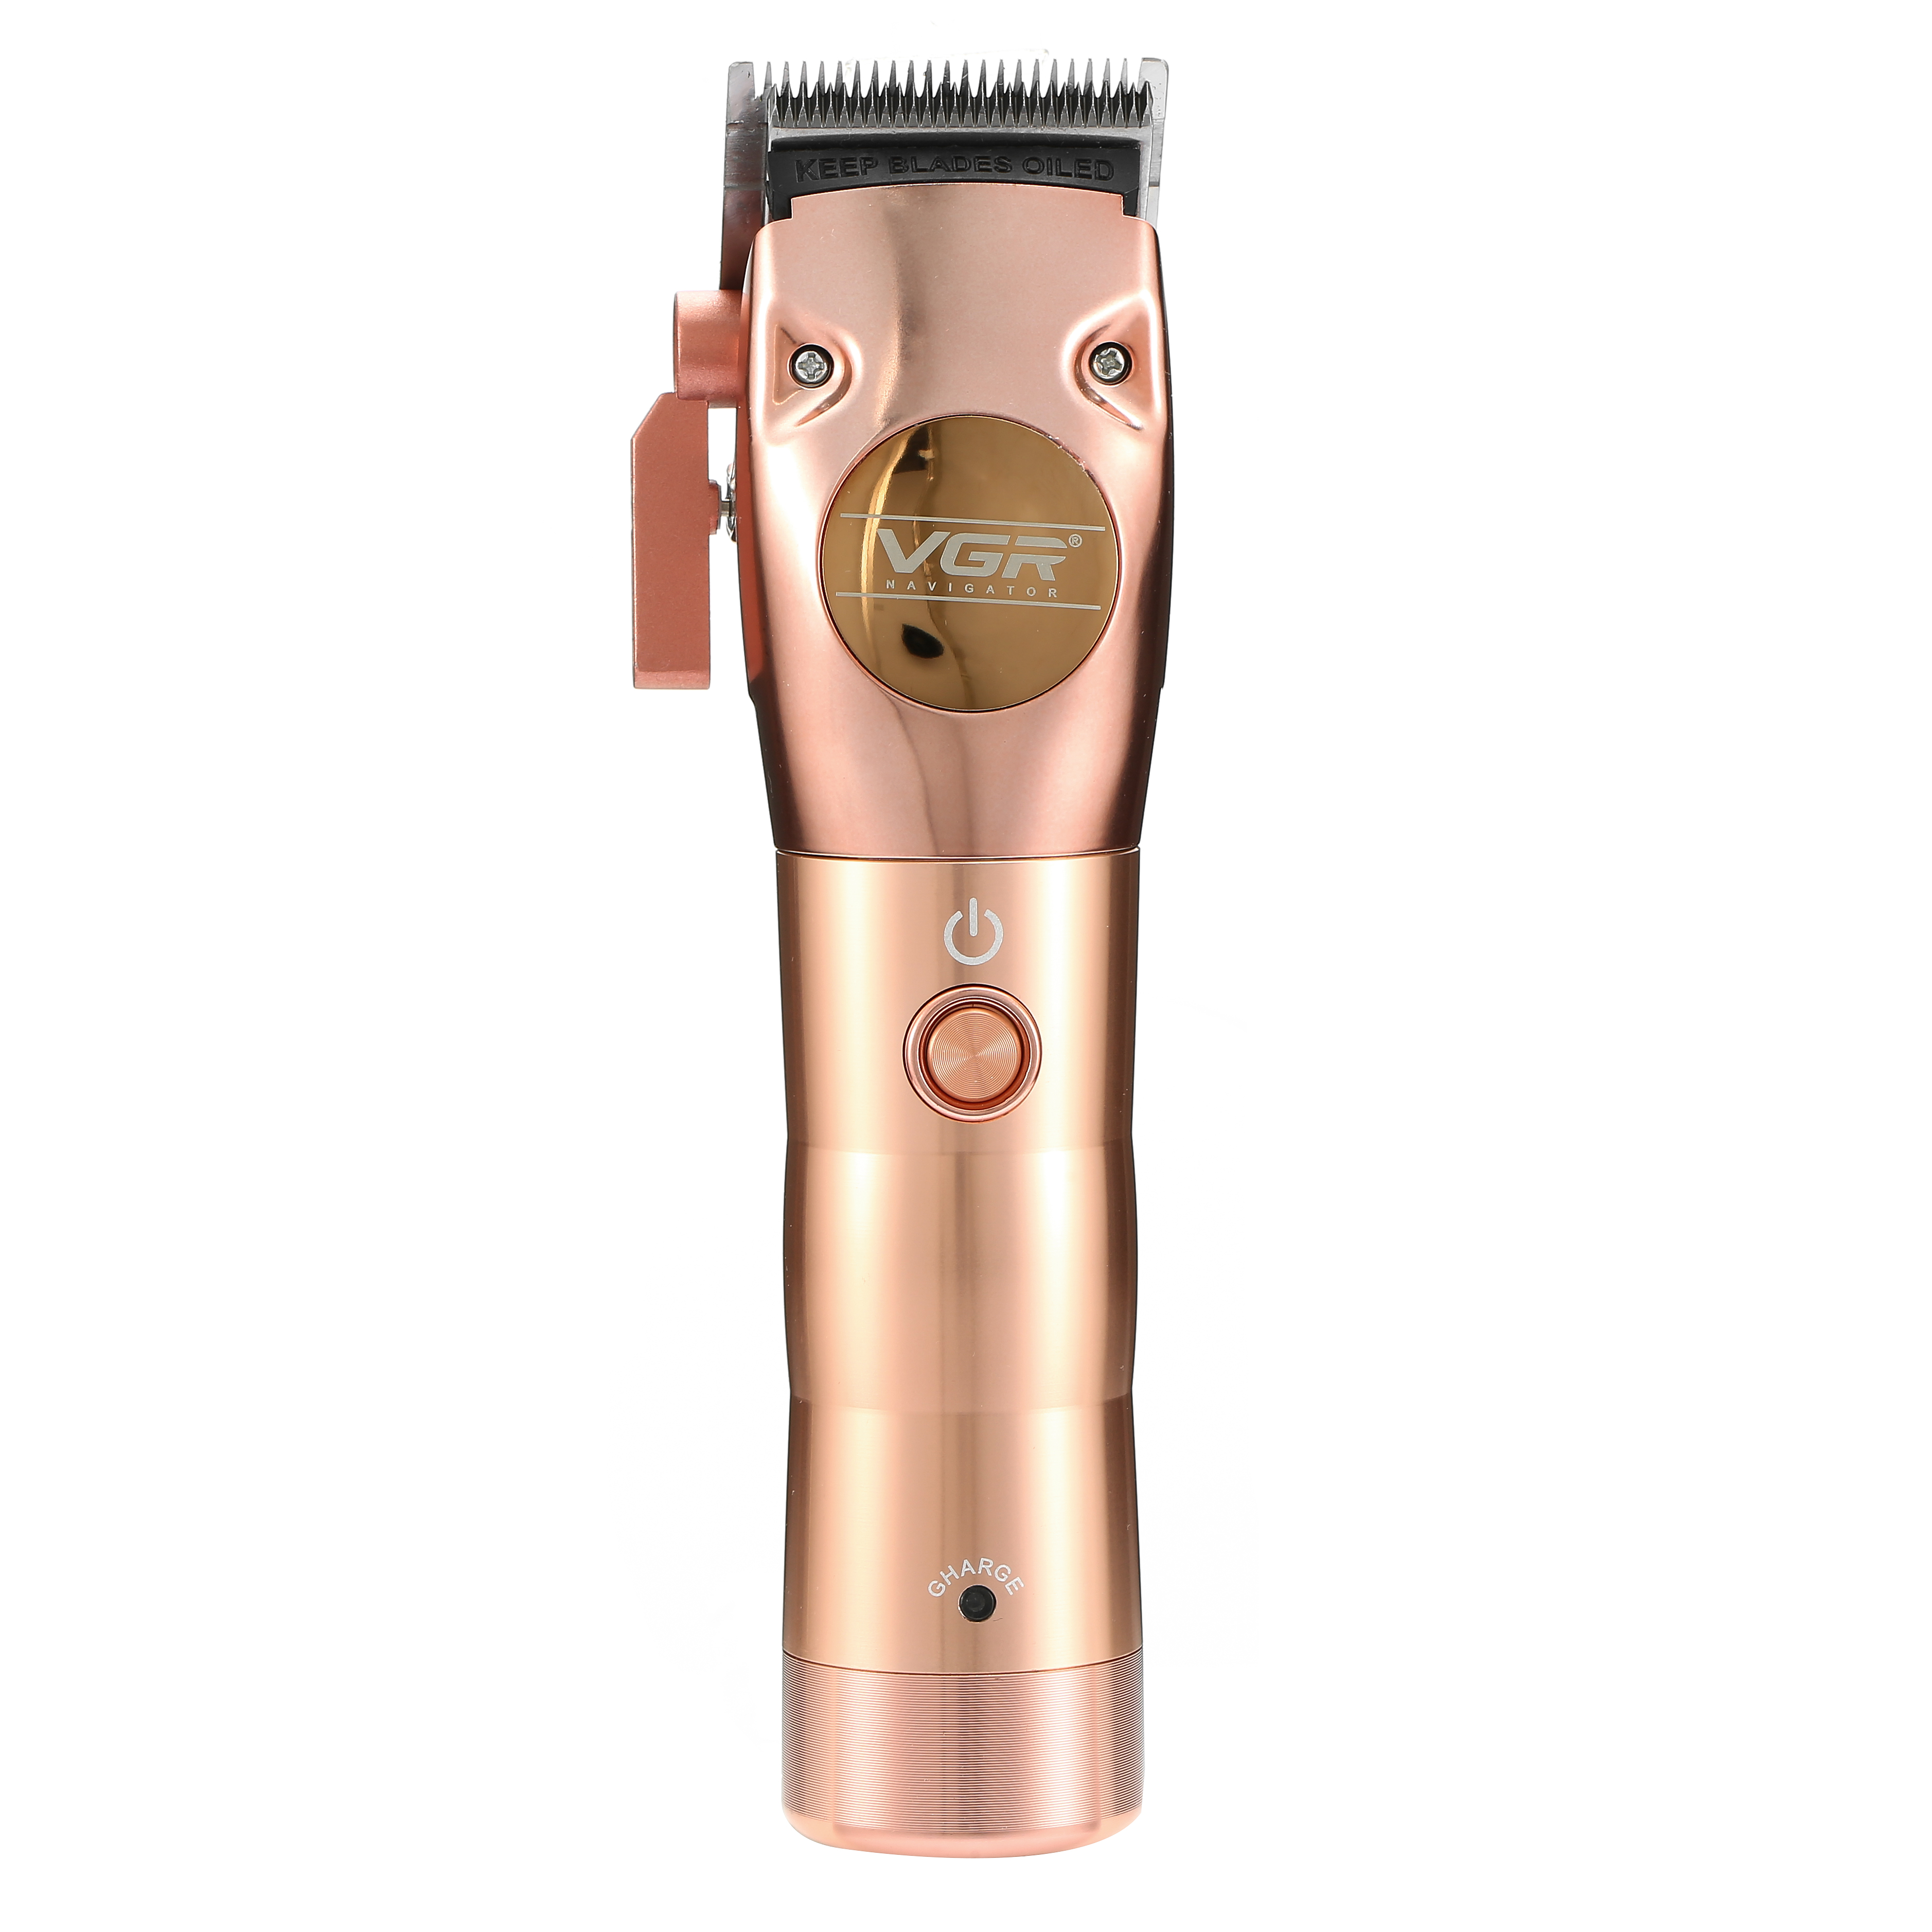 Машинка для стрижки волос VGR Professional VGR V-113 gold краска для волос ручка с высокой насыщенностью одноразовый diy крем для волос одноразовый лак для волос макияж аксессуары